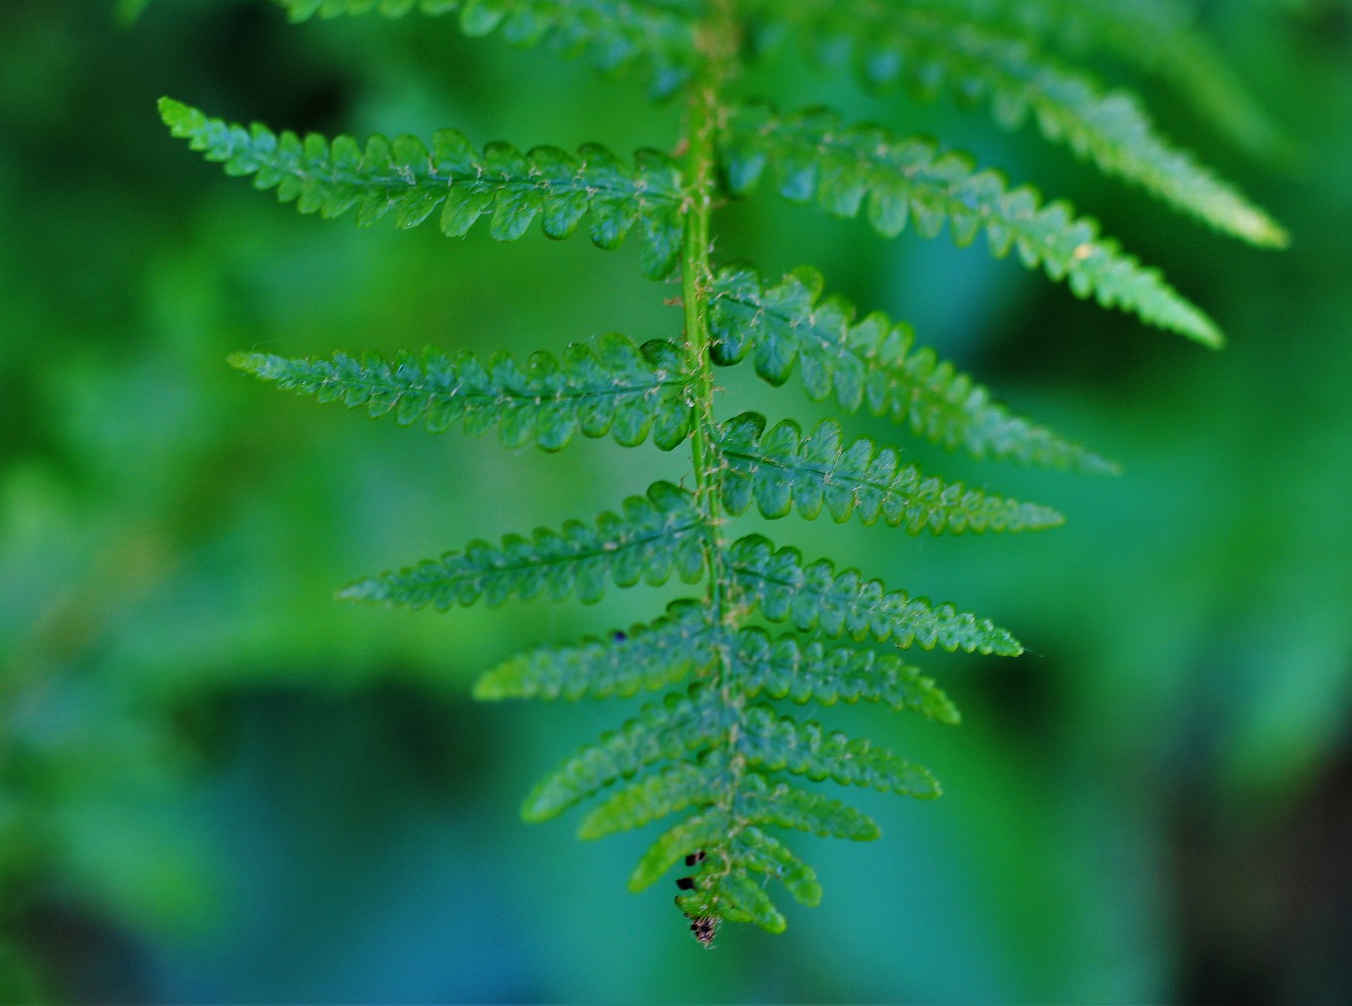 Worm fern leaf close up